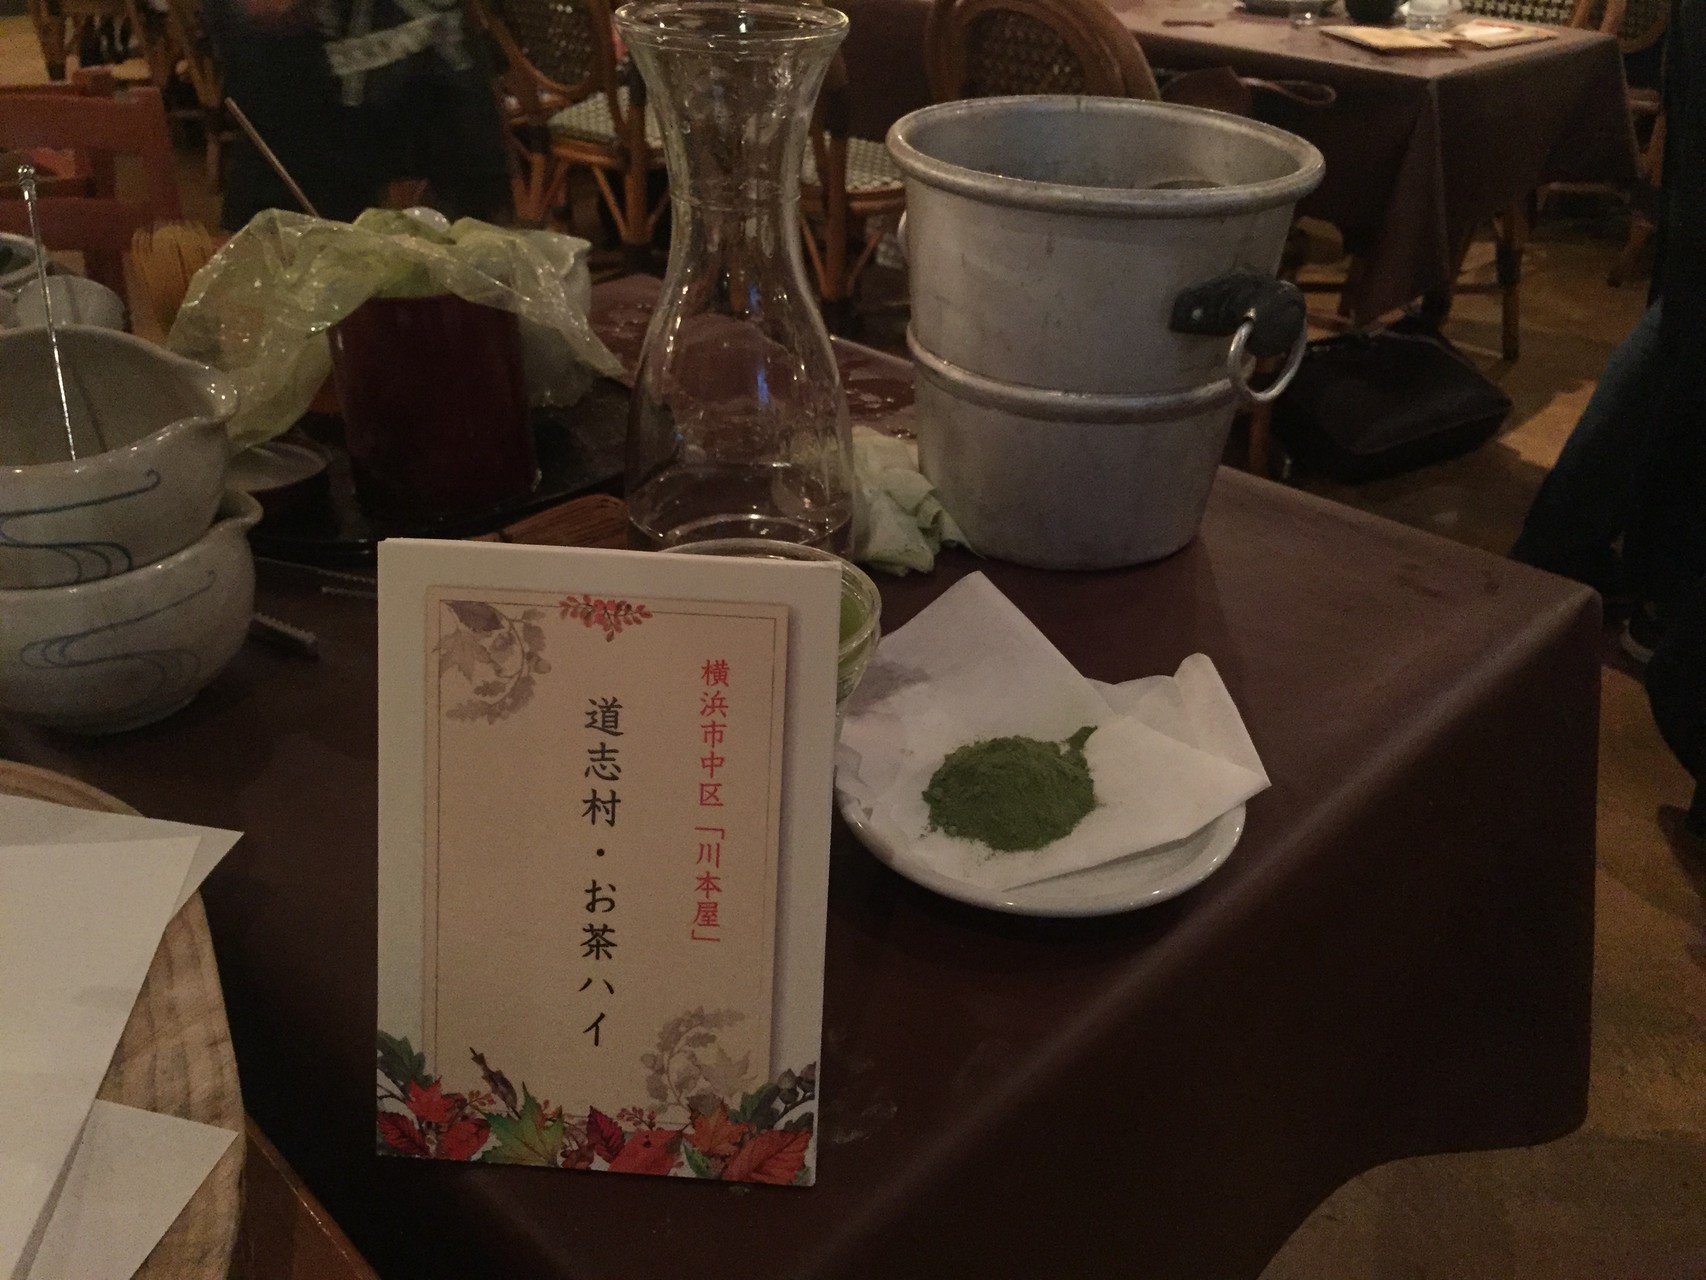 道志村で2軒がつくっているお茶っ葉を使ってます